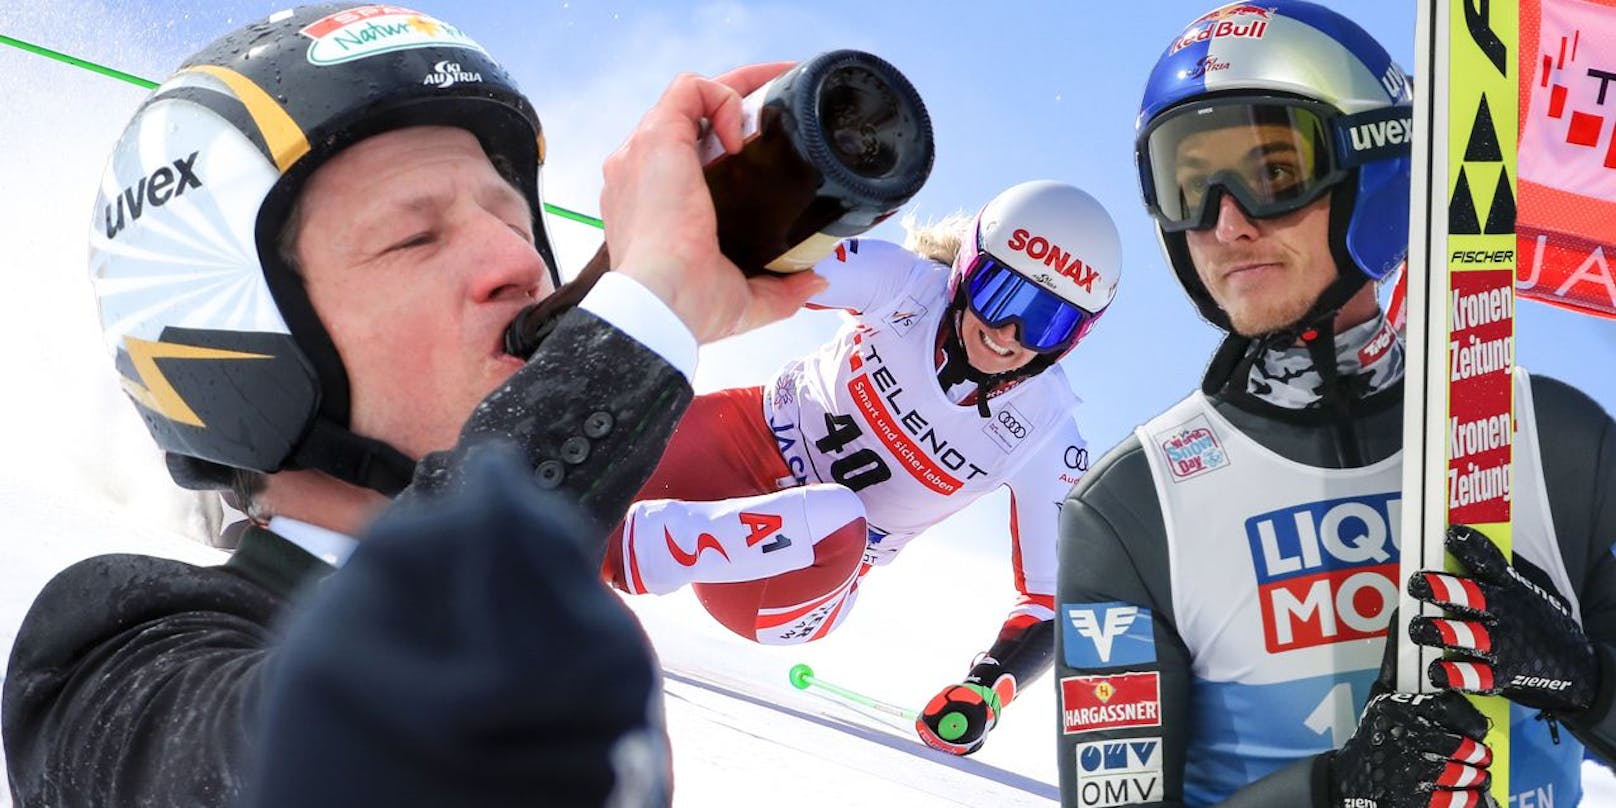 Hannes Reichelt, Eva-Maria Brem, Gregor Schlierenzauer und Co. — diese Ski-Stars beendeten 2021 ihre Karriere.